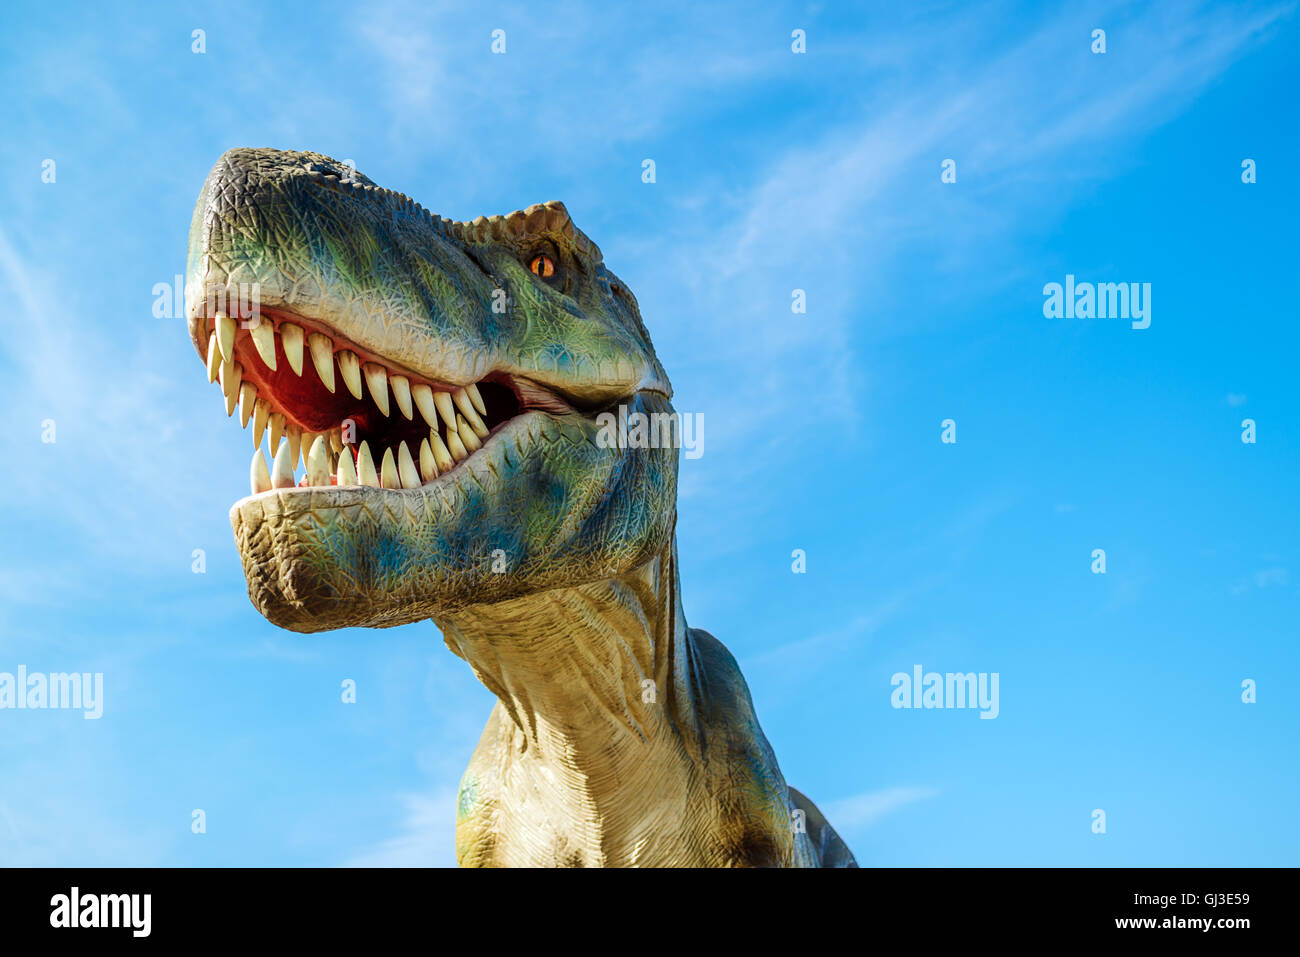 NOVI SAD SERBIA - Agosto 7, 2016: Tirannosauro vita dimensioni modello di animale preistorico di intrattenimento a tema Dino Park. Foto Stock